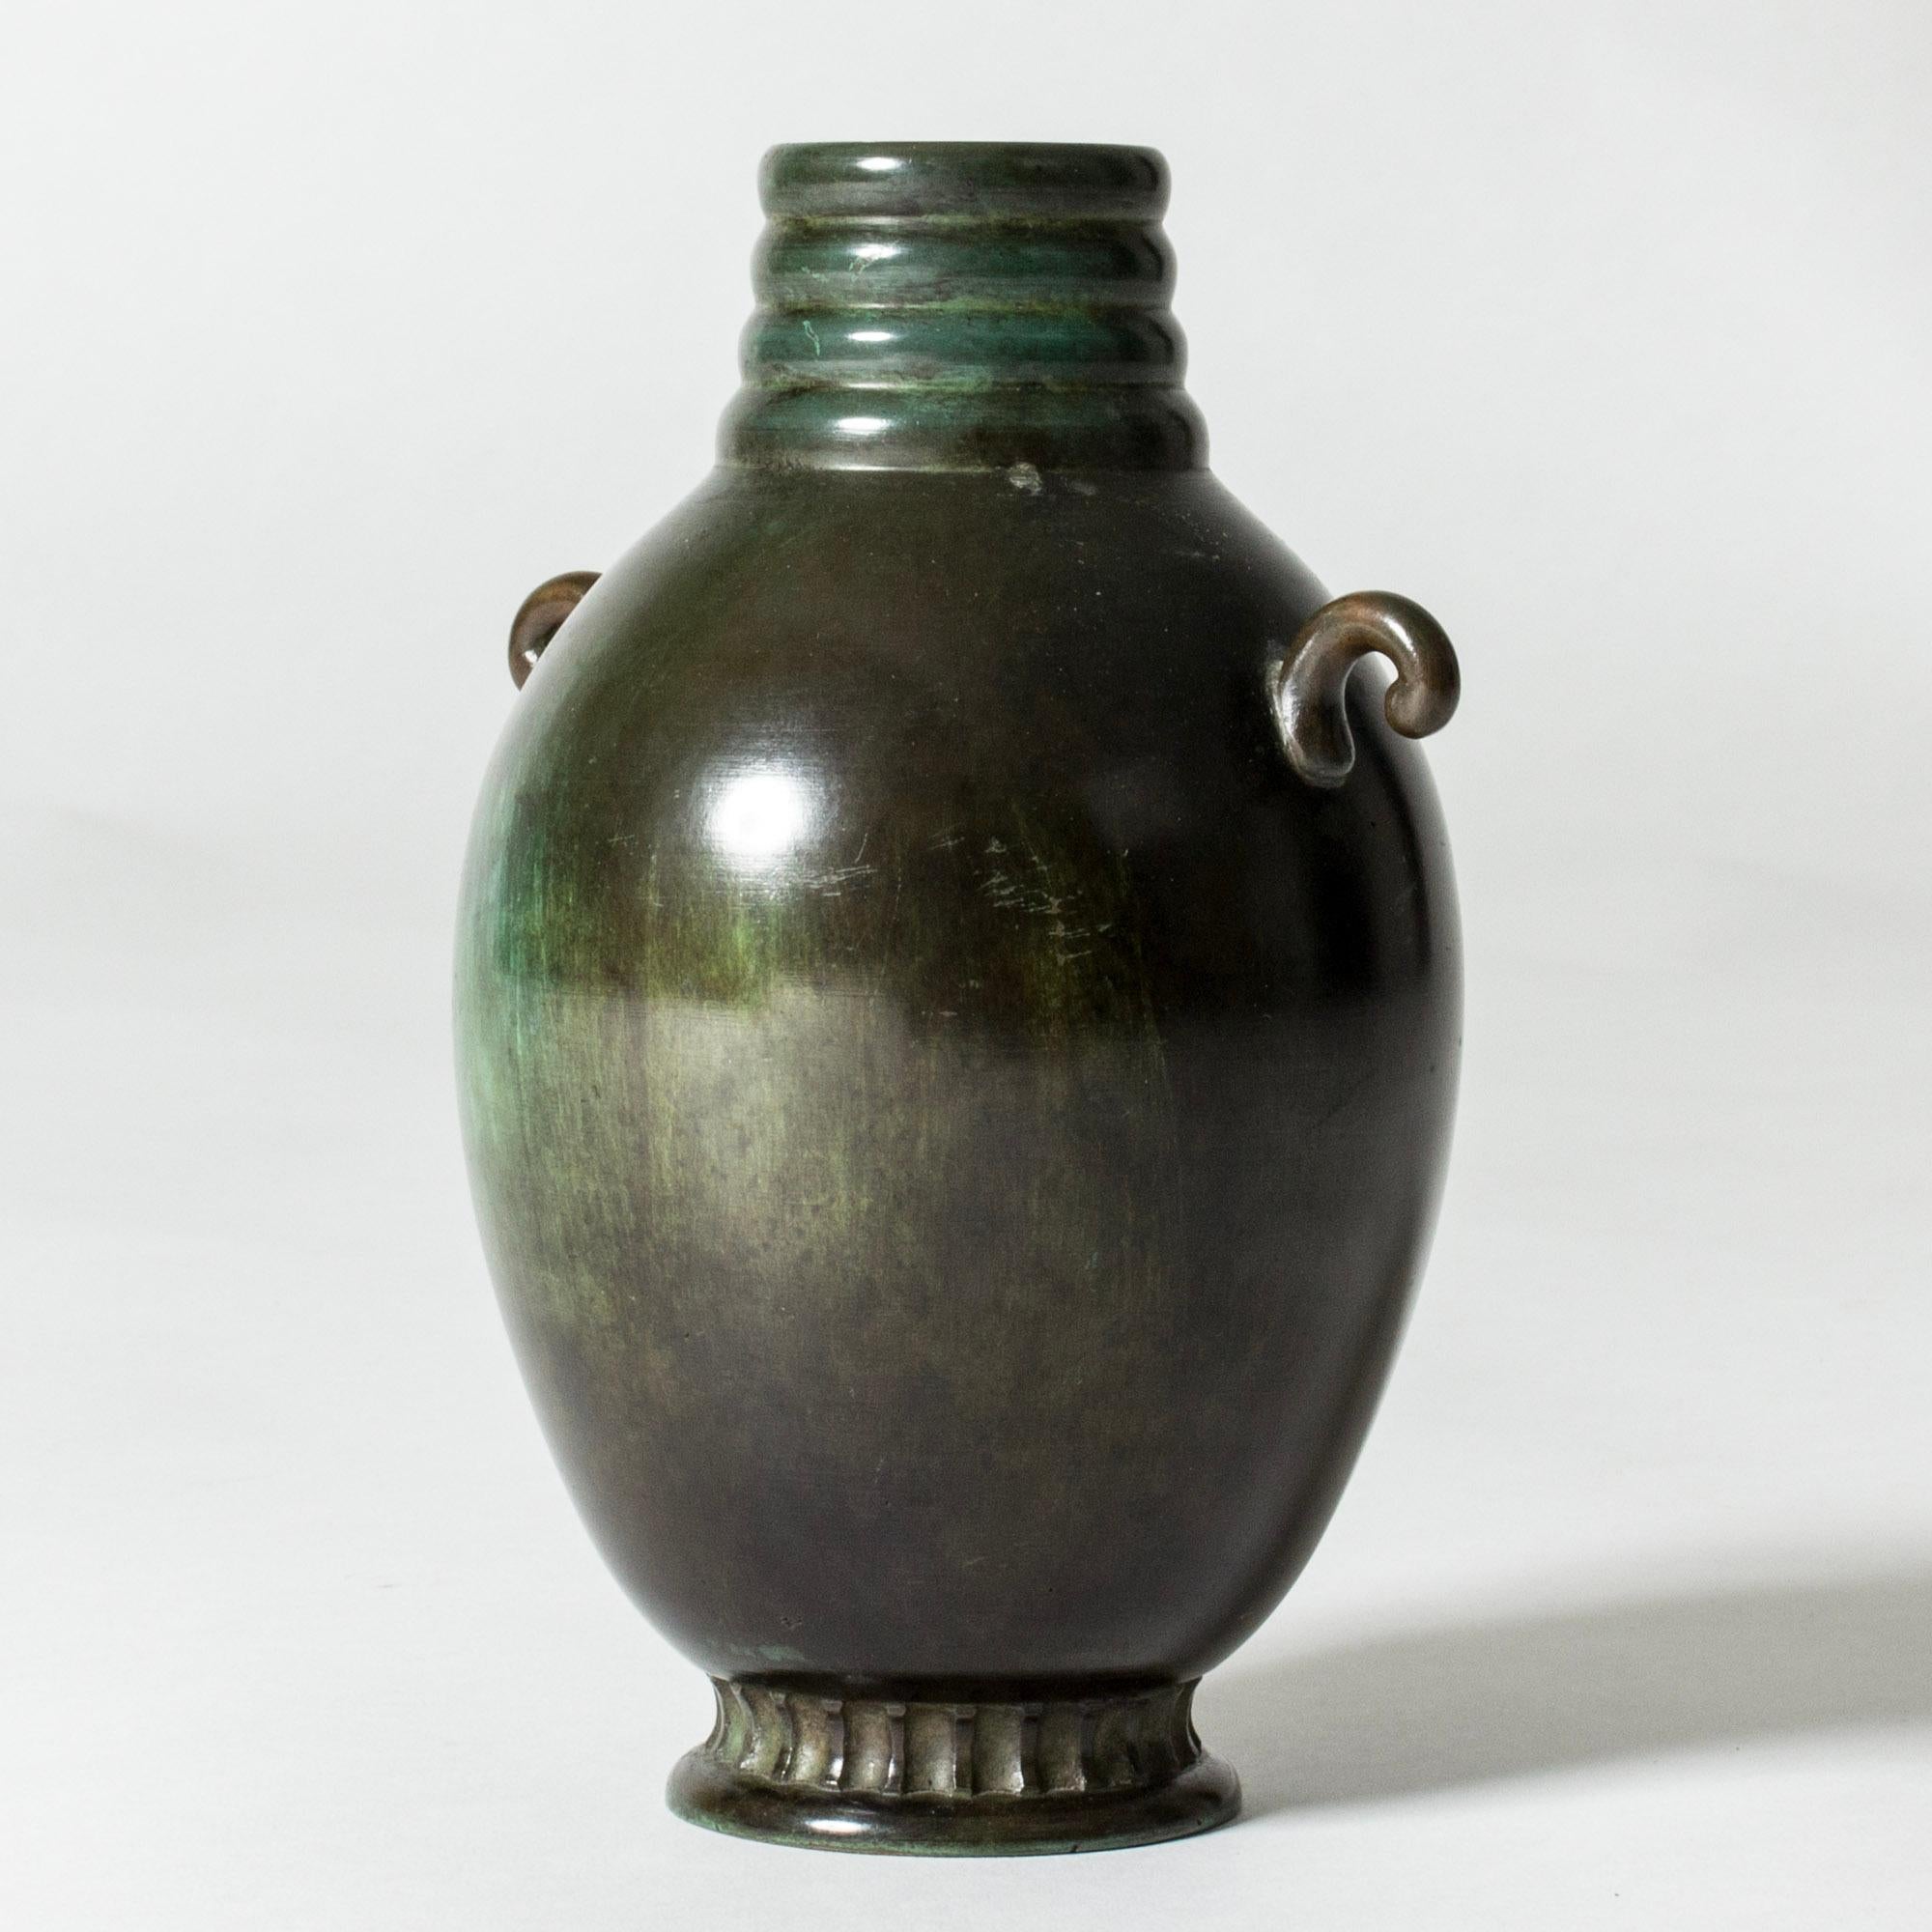 Joli vase en bronze des années 1930, de forme arrondie, avec des poignées et des détails décoratifs. Patiné dans de belles nuances de vert.

La GAB a été fondée à Stockholm en 1867 et a exercé une influence importante sur les scènes suédoises de